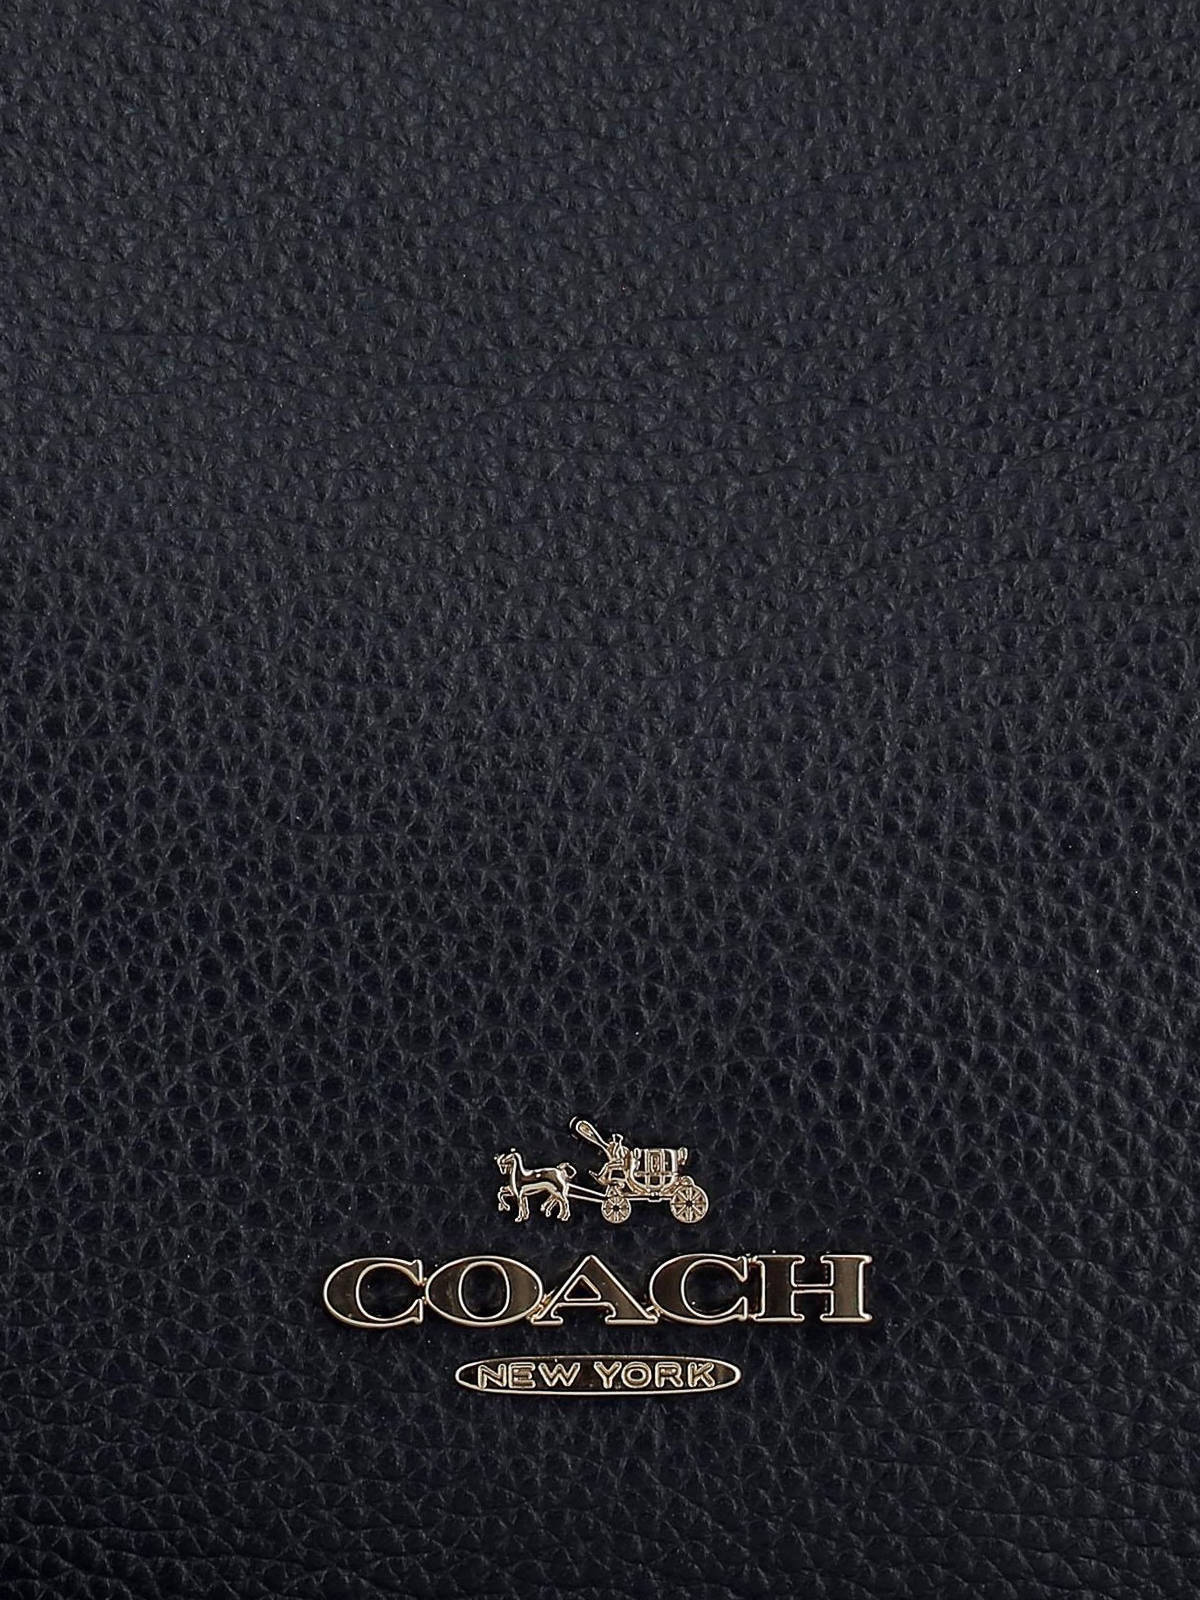 Coach Logo On Black Leather Background